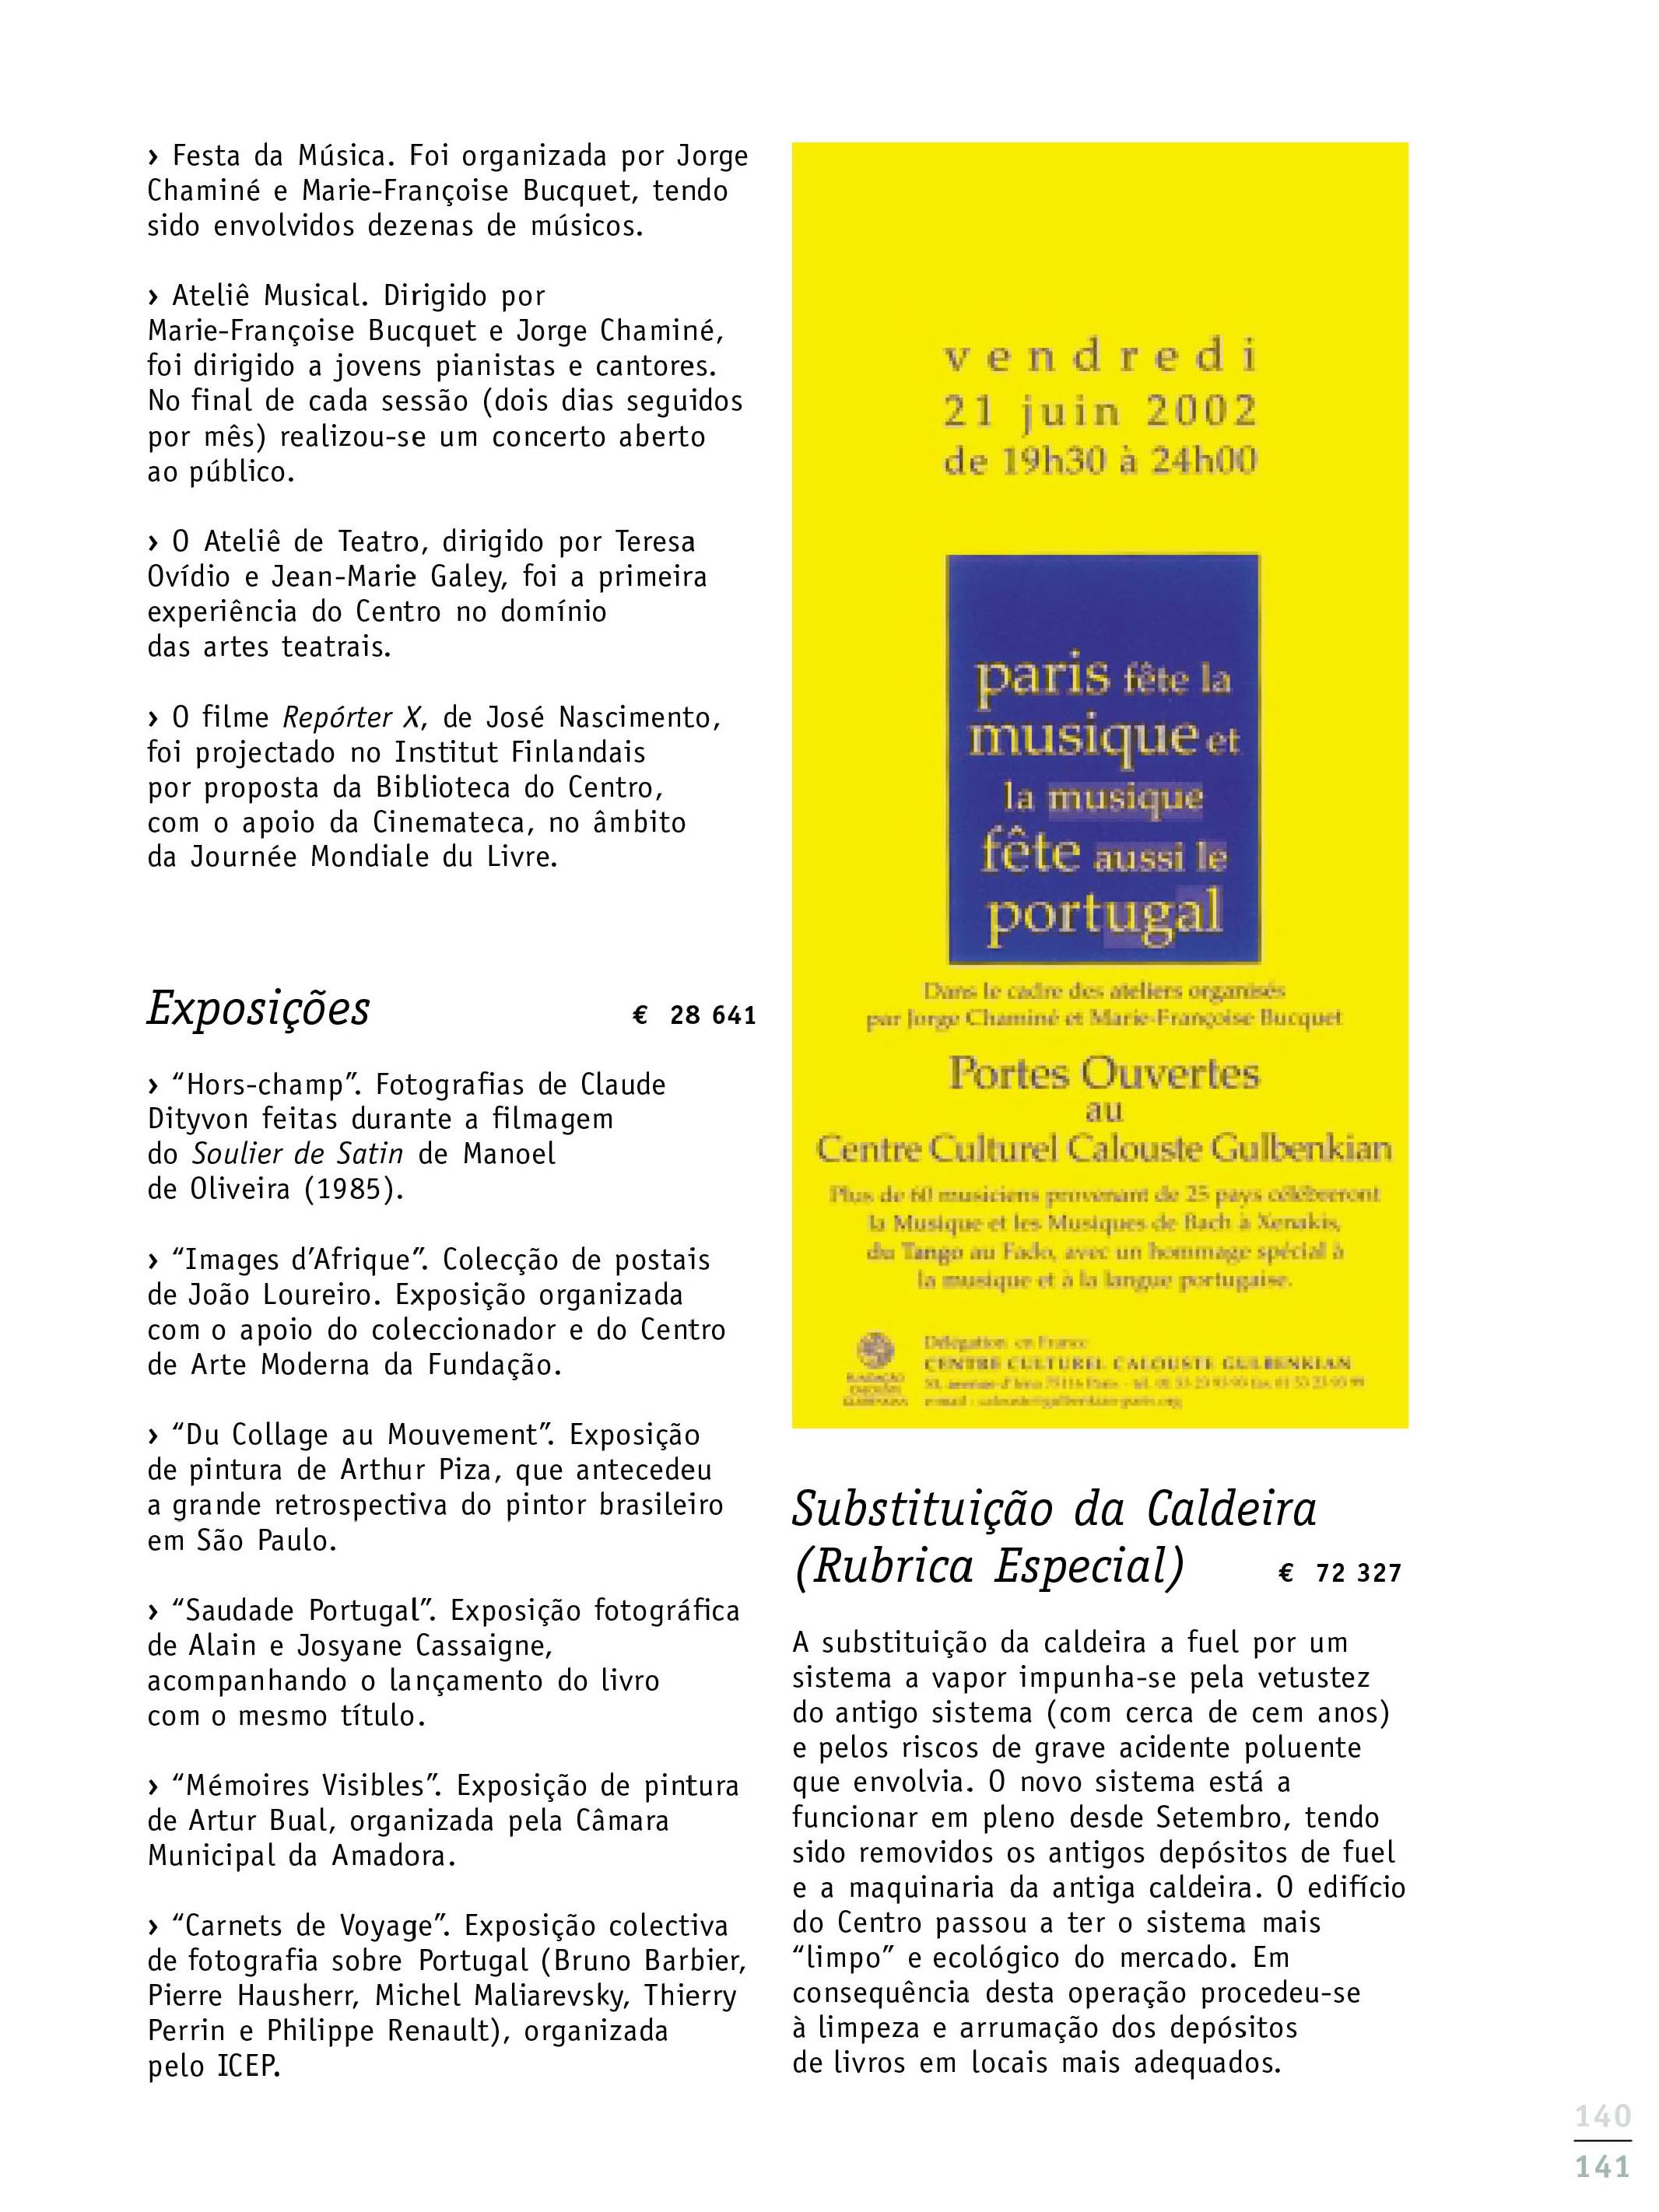 27376_Relatório_ Balanço e Contas 2002-142